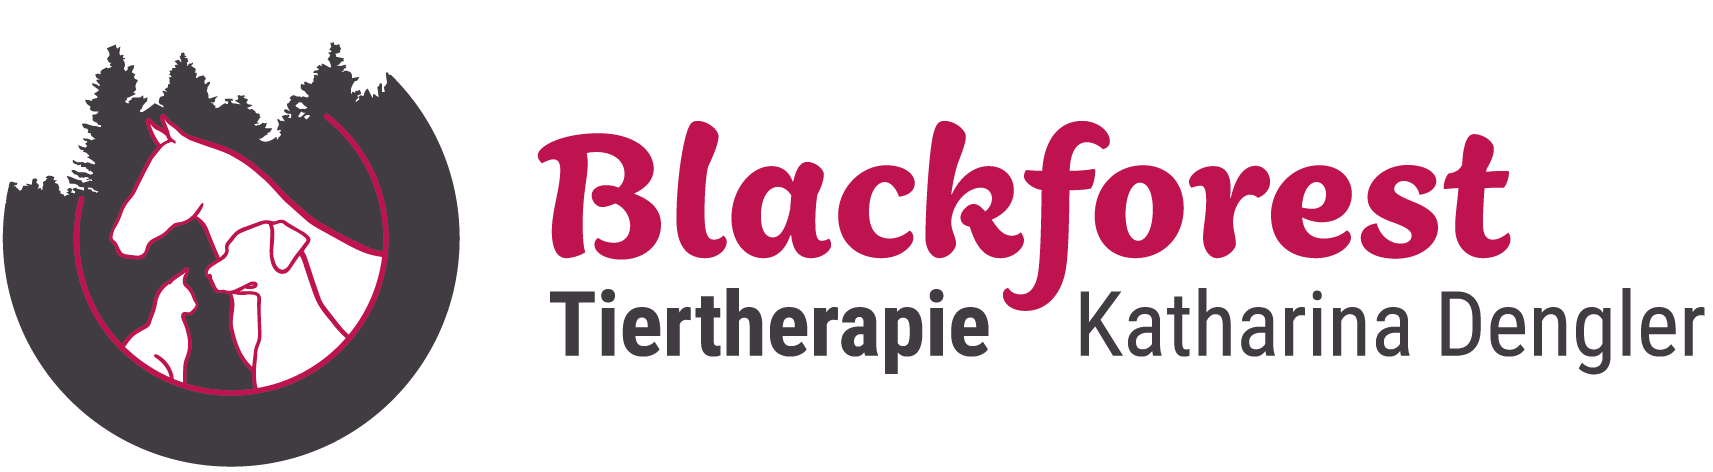 Blackforest Tiertherapie